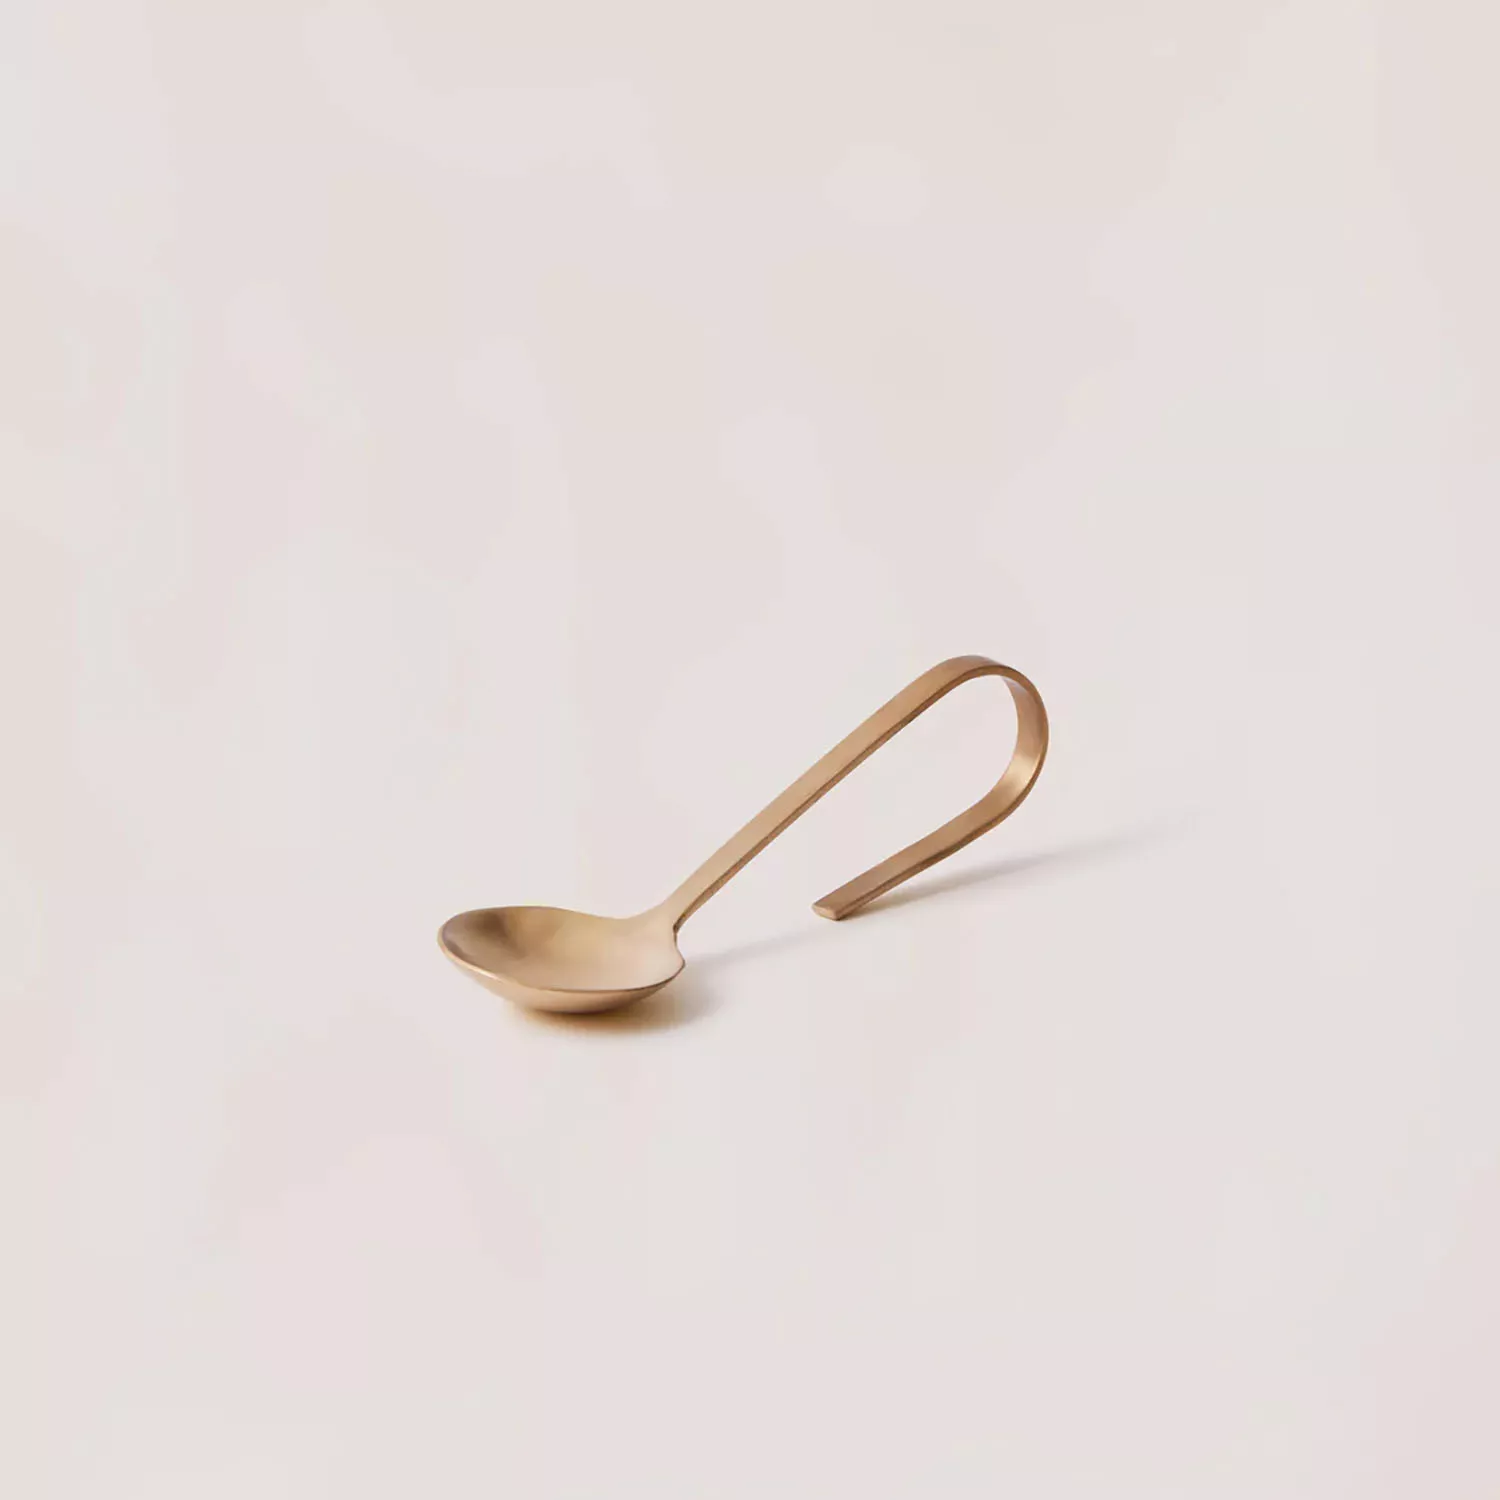 Fleck Loop Spoon, 5.5"